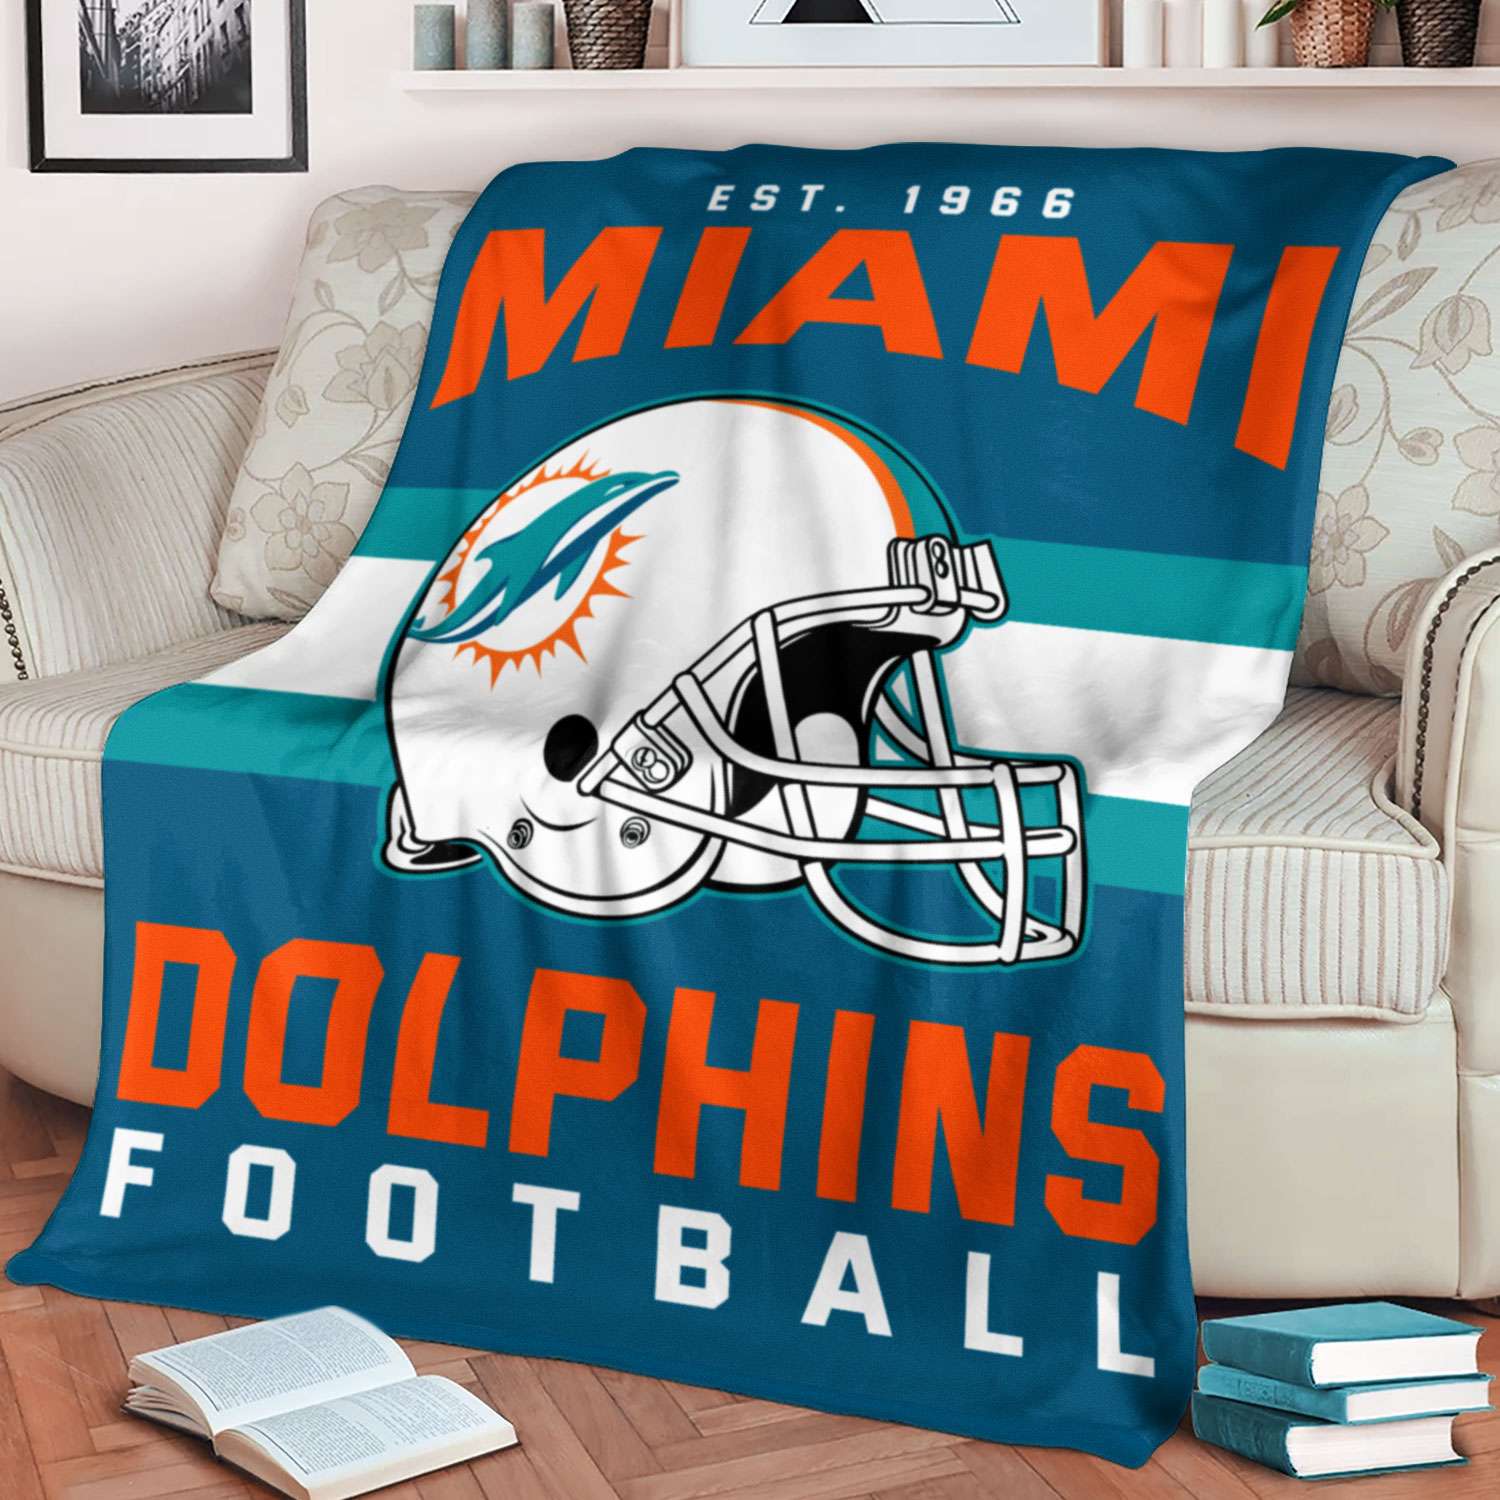 Miami Dolphins NFL Football Team Helmet Blanket